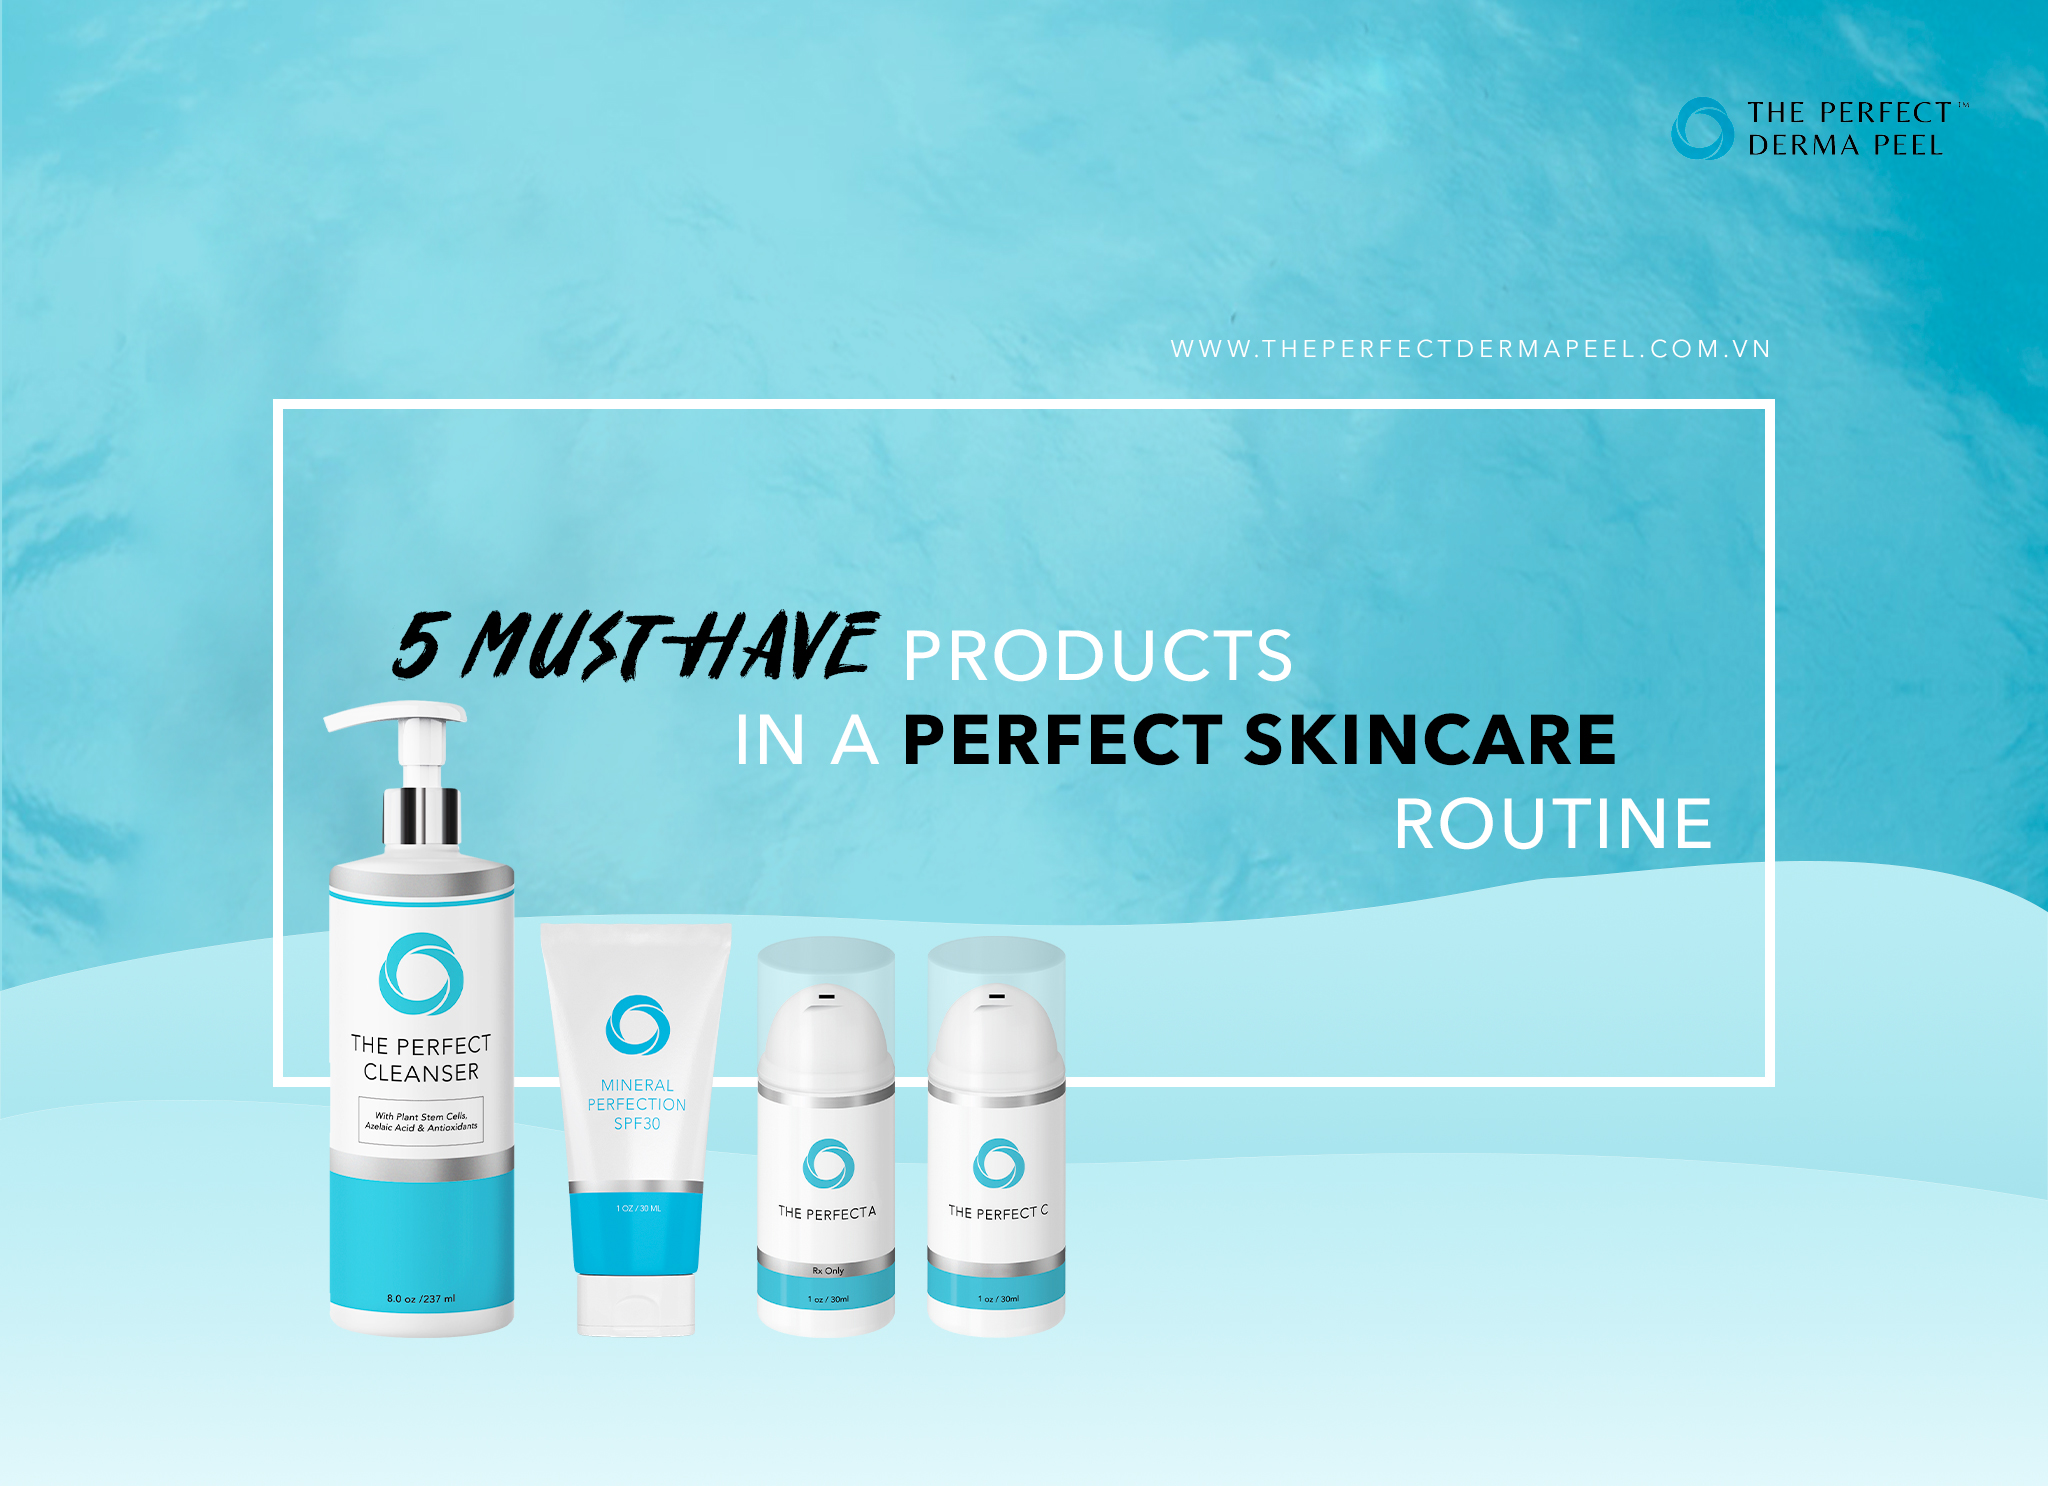 5 sản phẩm must-have để xây dựng một quy trình skincare hoàn hảo